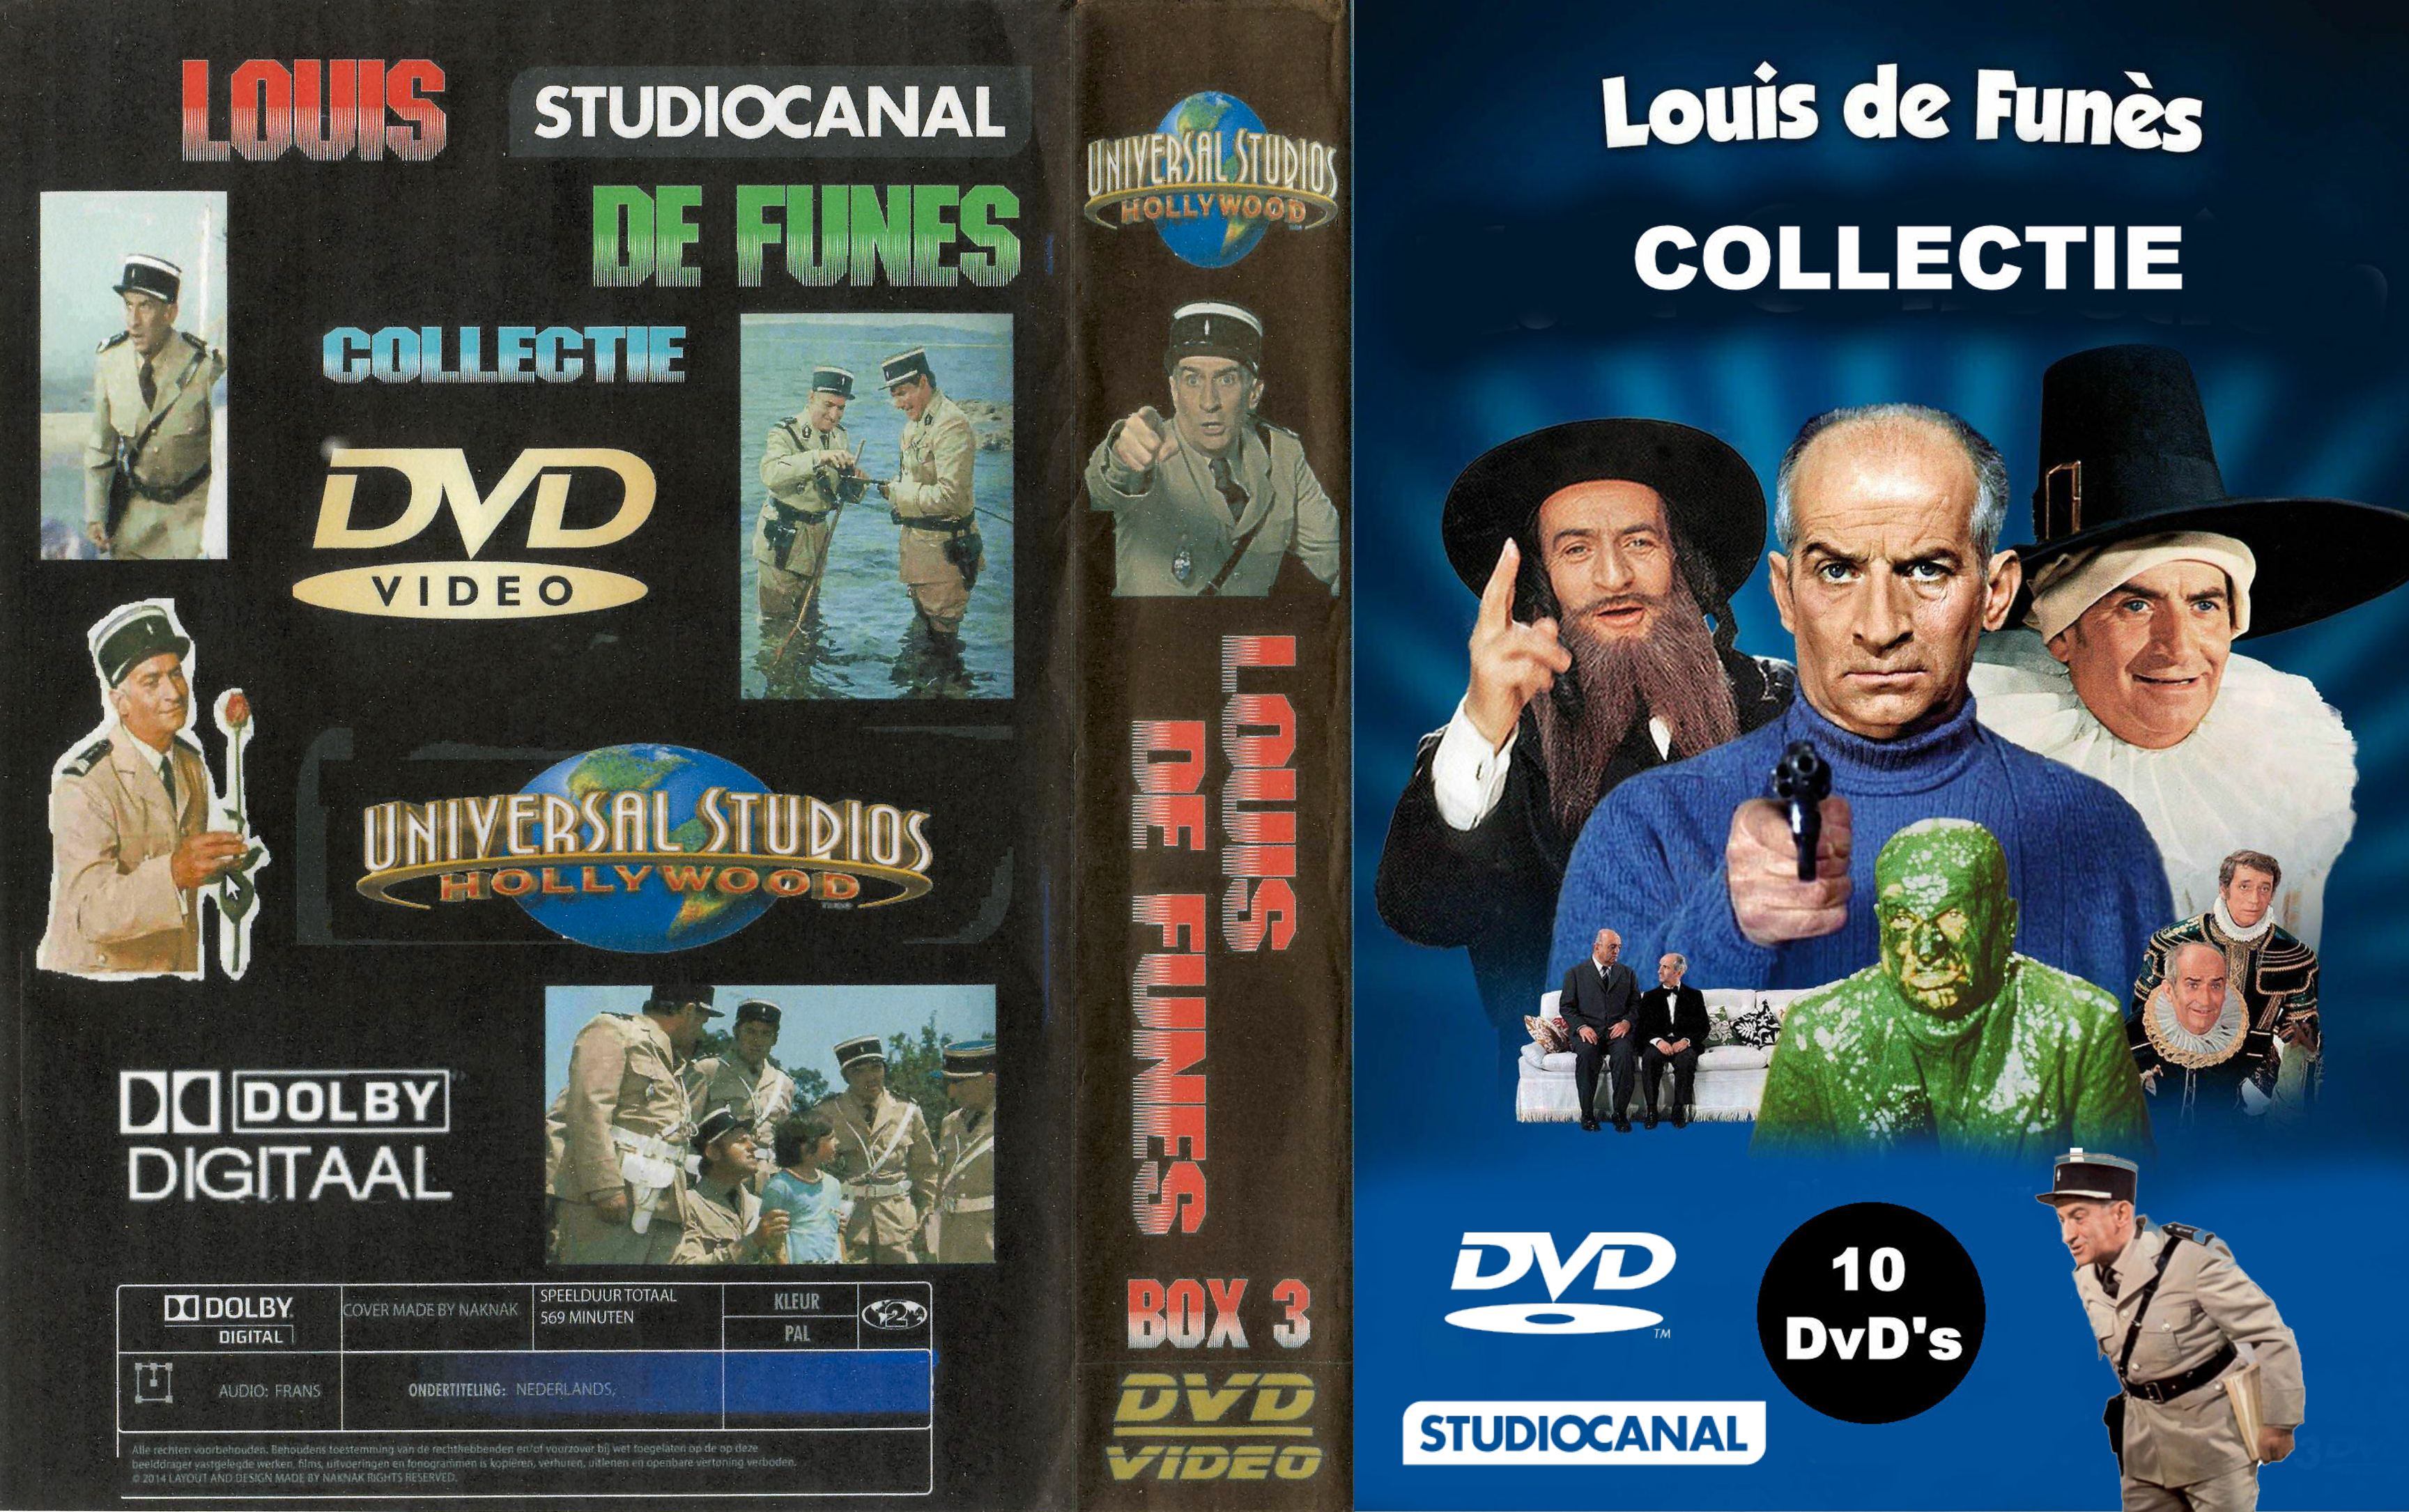 Louis de Funes Collectie ( 30 DvD's ) - DvD 21